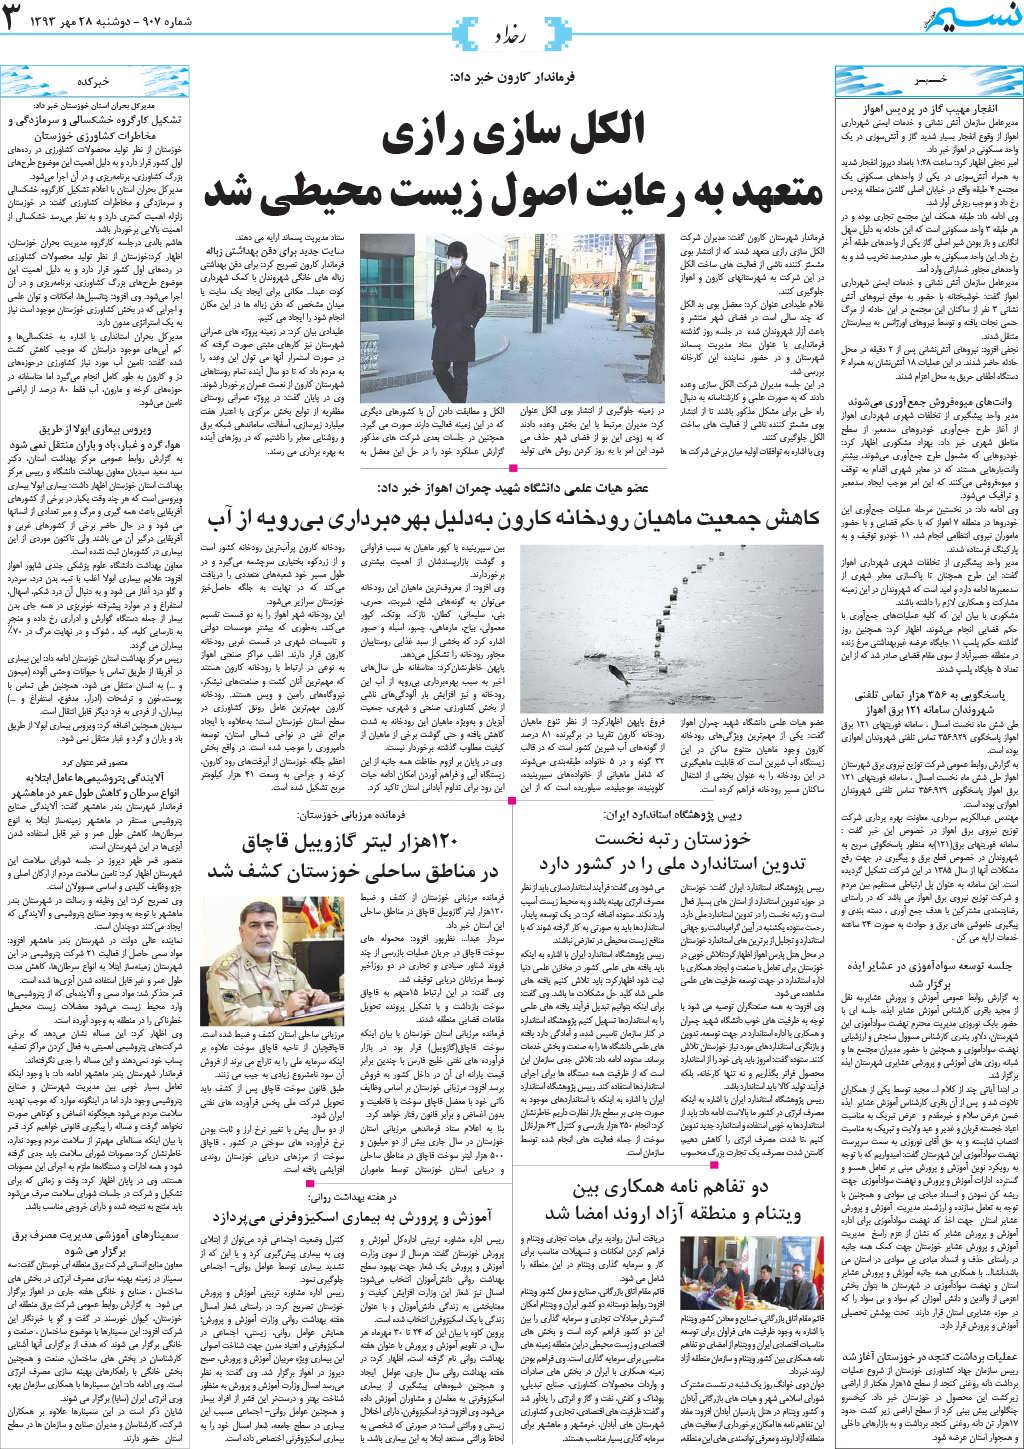 صفحه رخداد روزنامه نسیم شماره 907